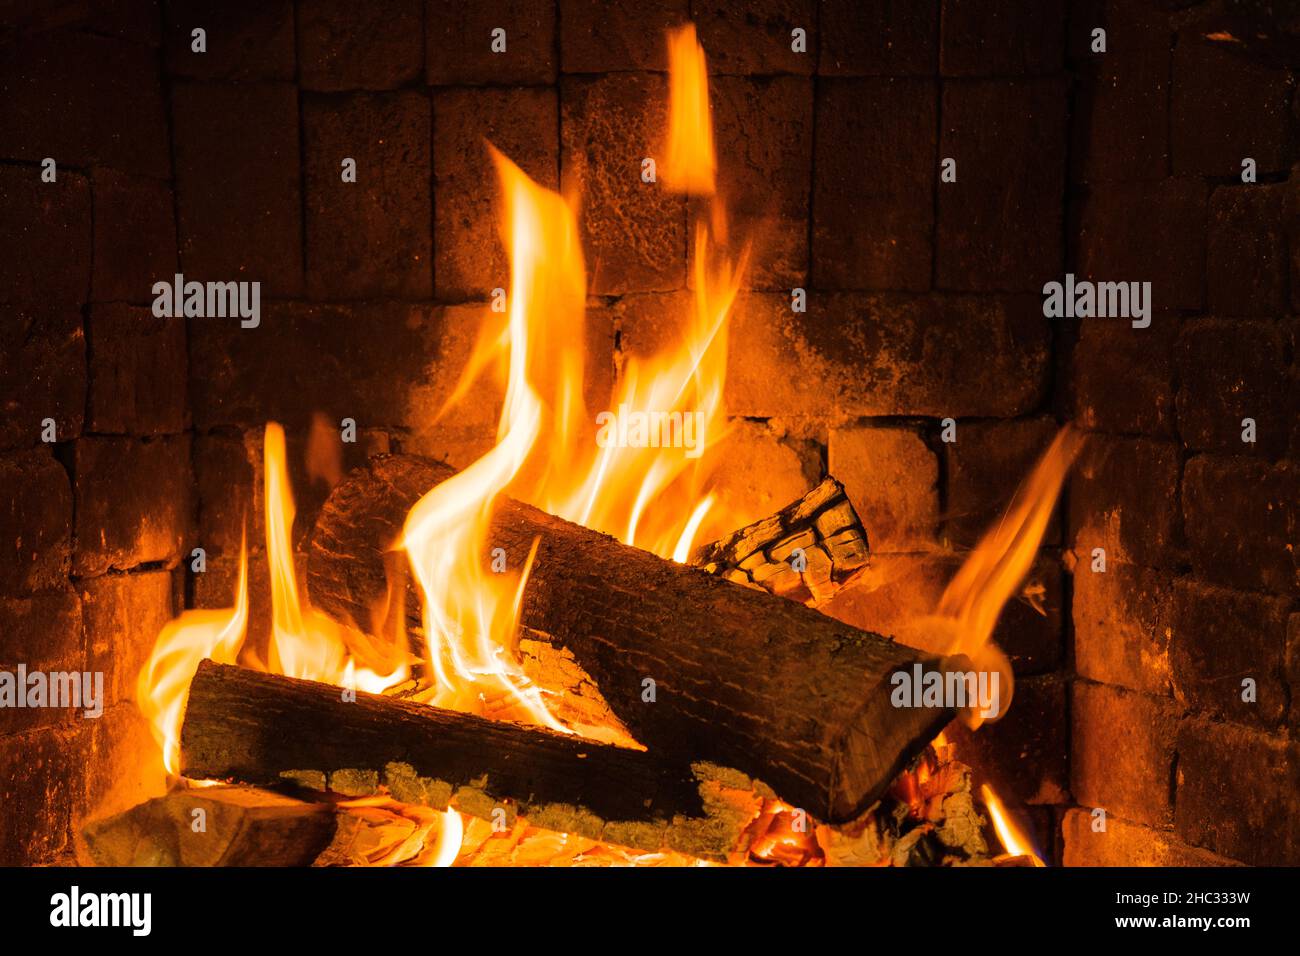 Camino 4k immagini e fotografie stock ad alta risoluzione - Alamy